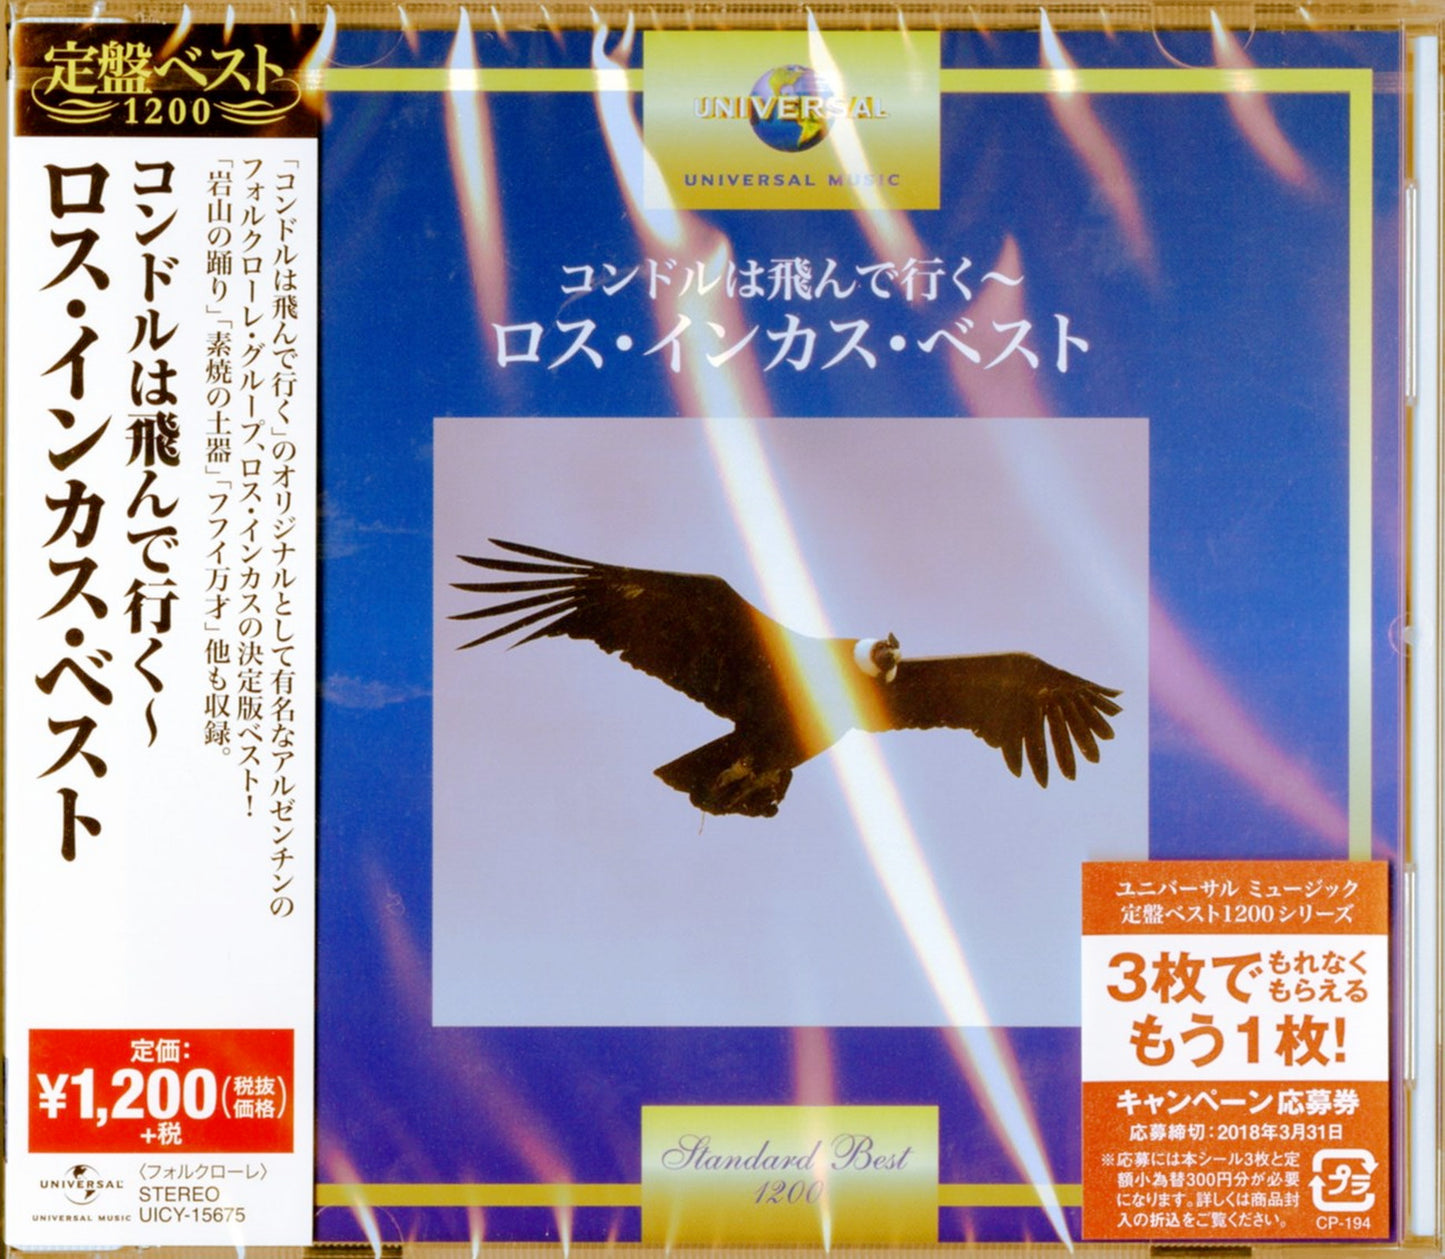 Los Incas - El C?ndor Pasa Los Incas Best - Japan CD